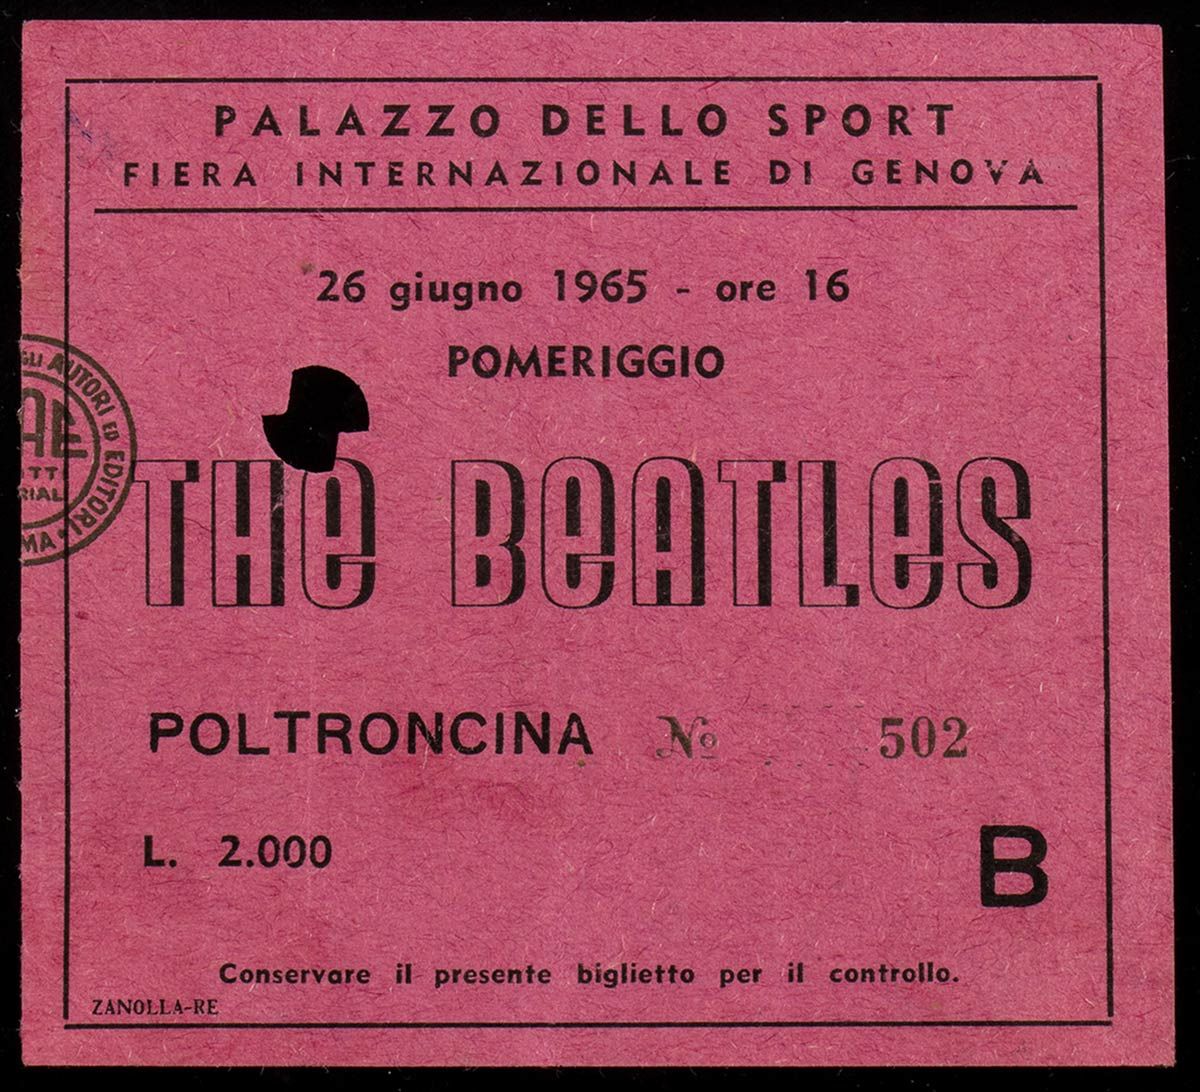 The Beatles: Genoa concert ticket, June 26, 1965 Eintrittskarte für das Konzert &hellip;